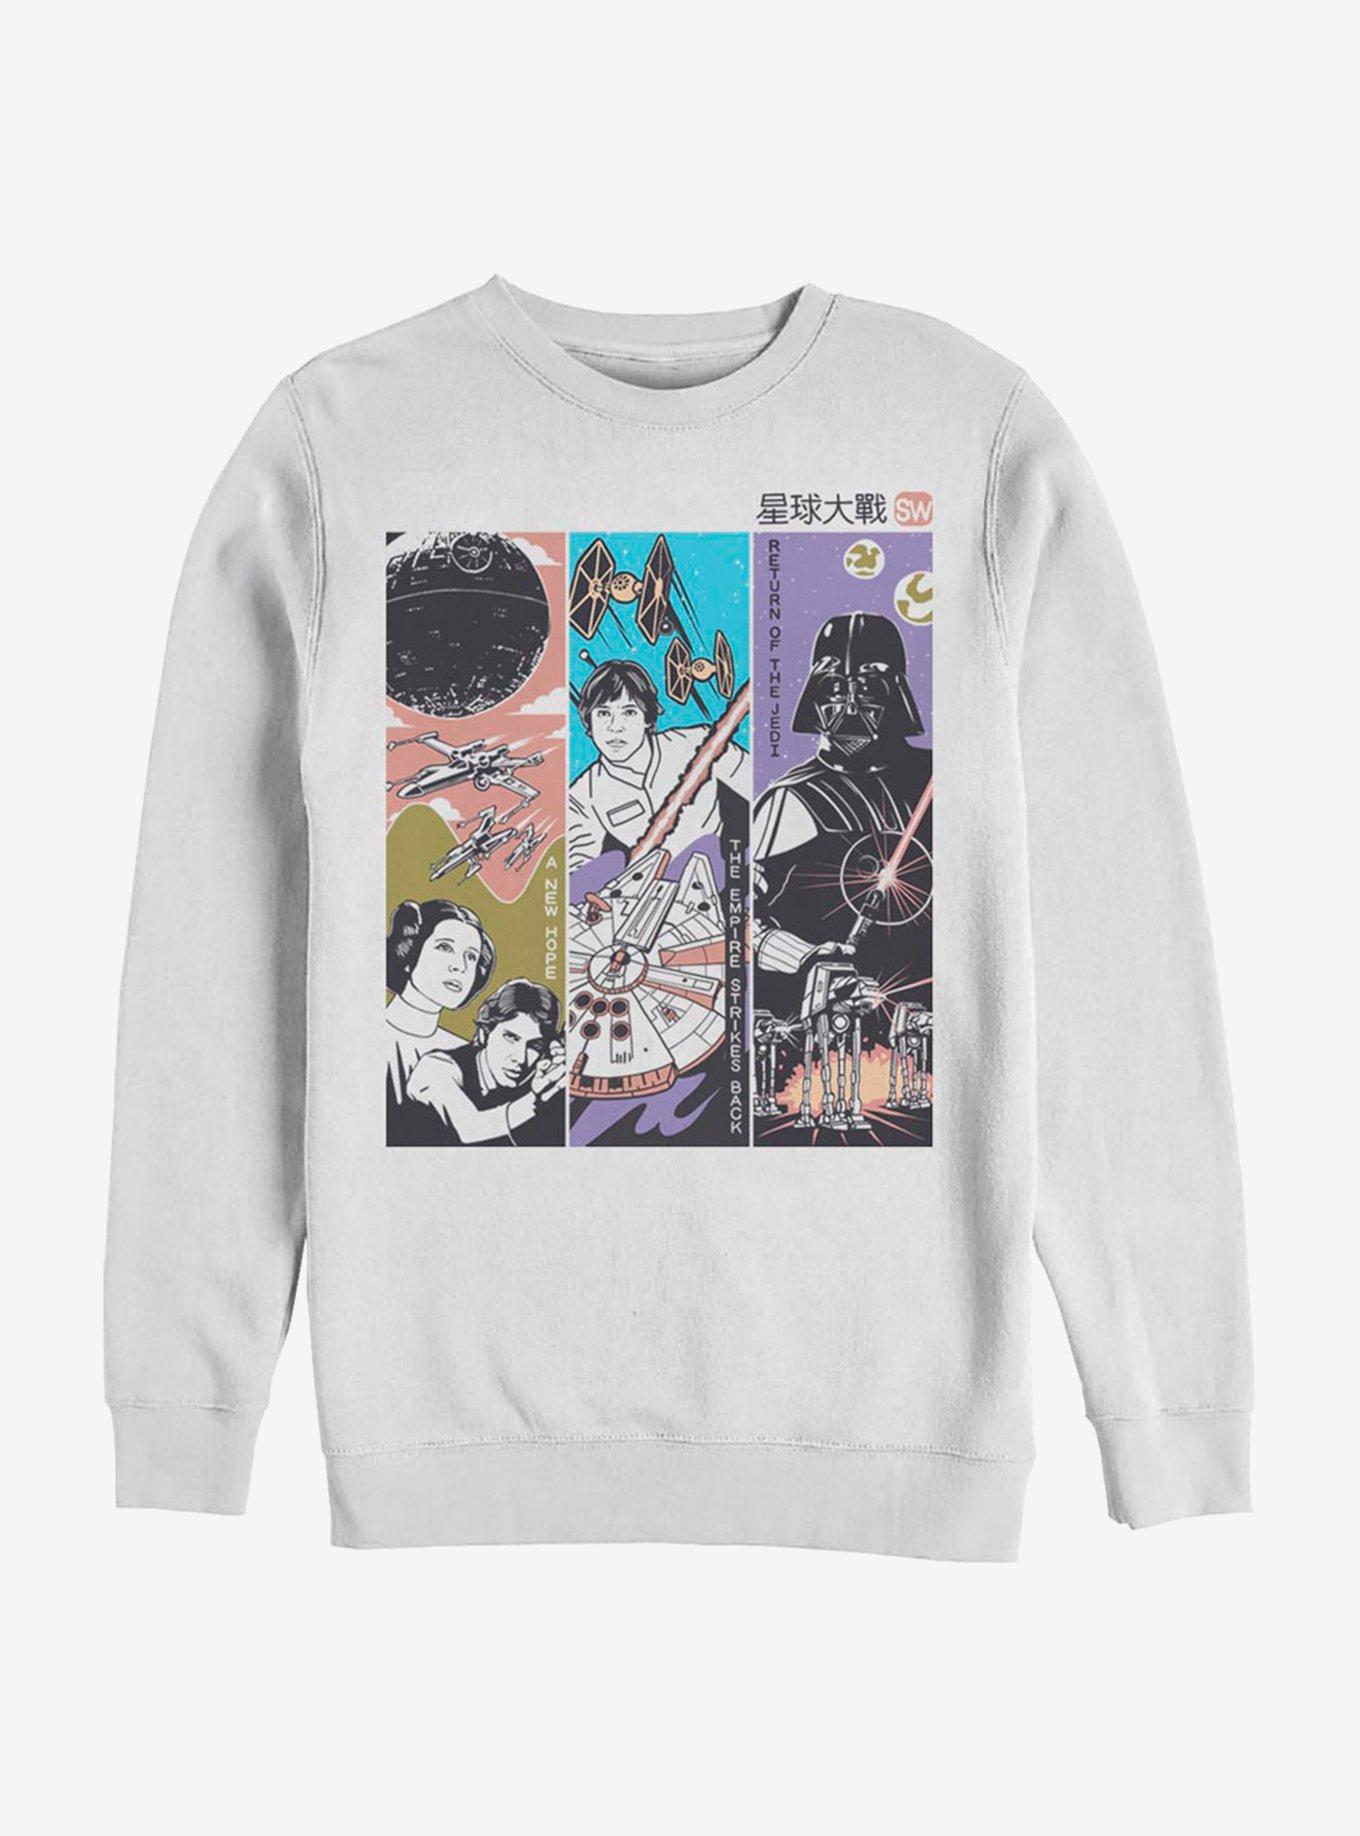 Star Wars Triptych Sweatshirt, WHITE, hi-res